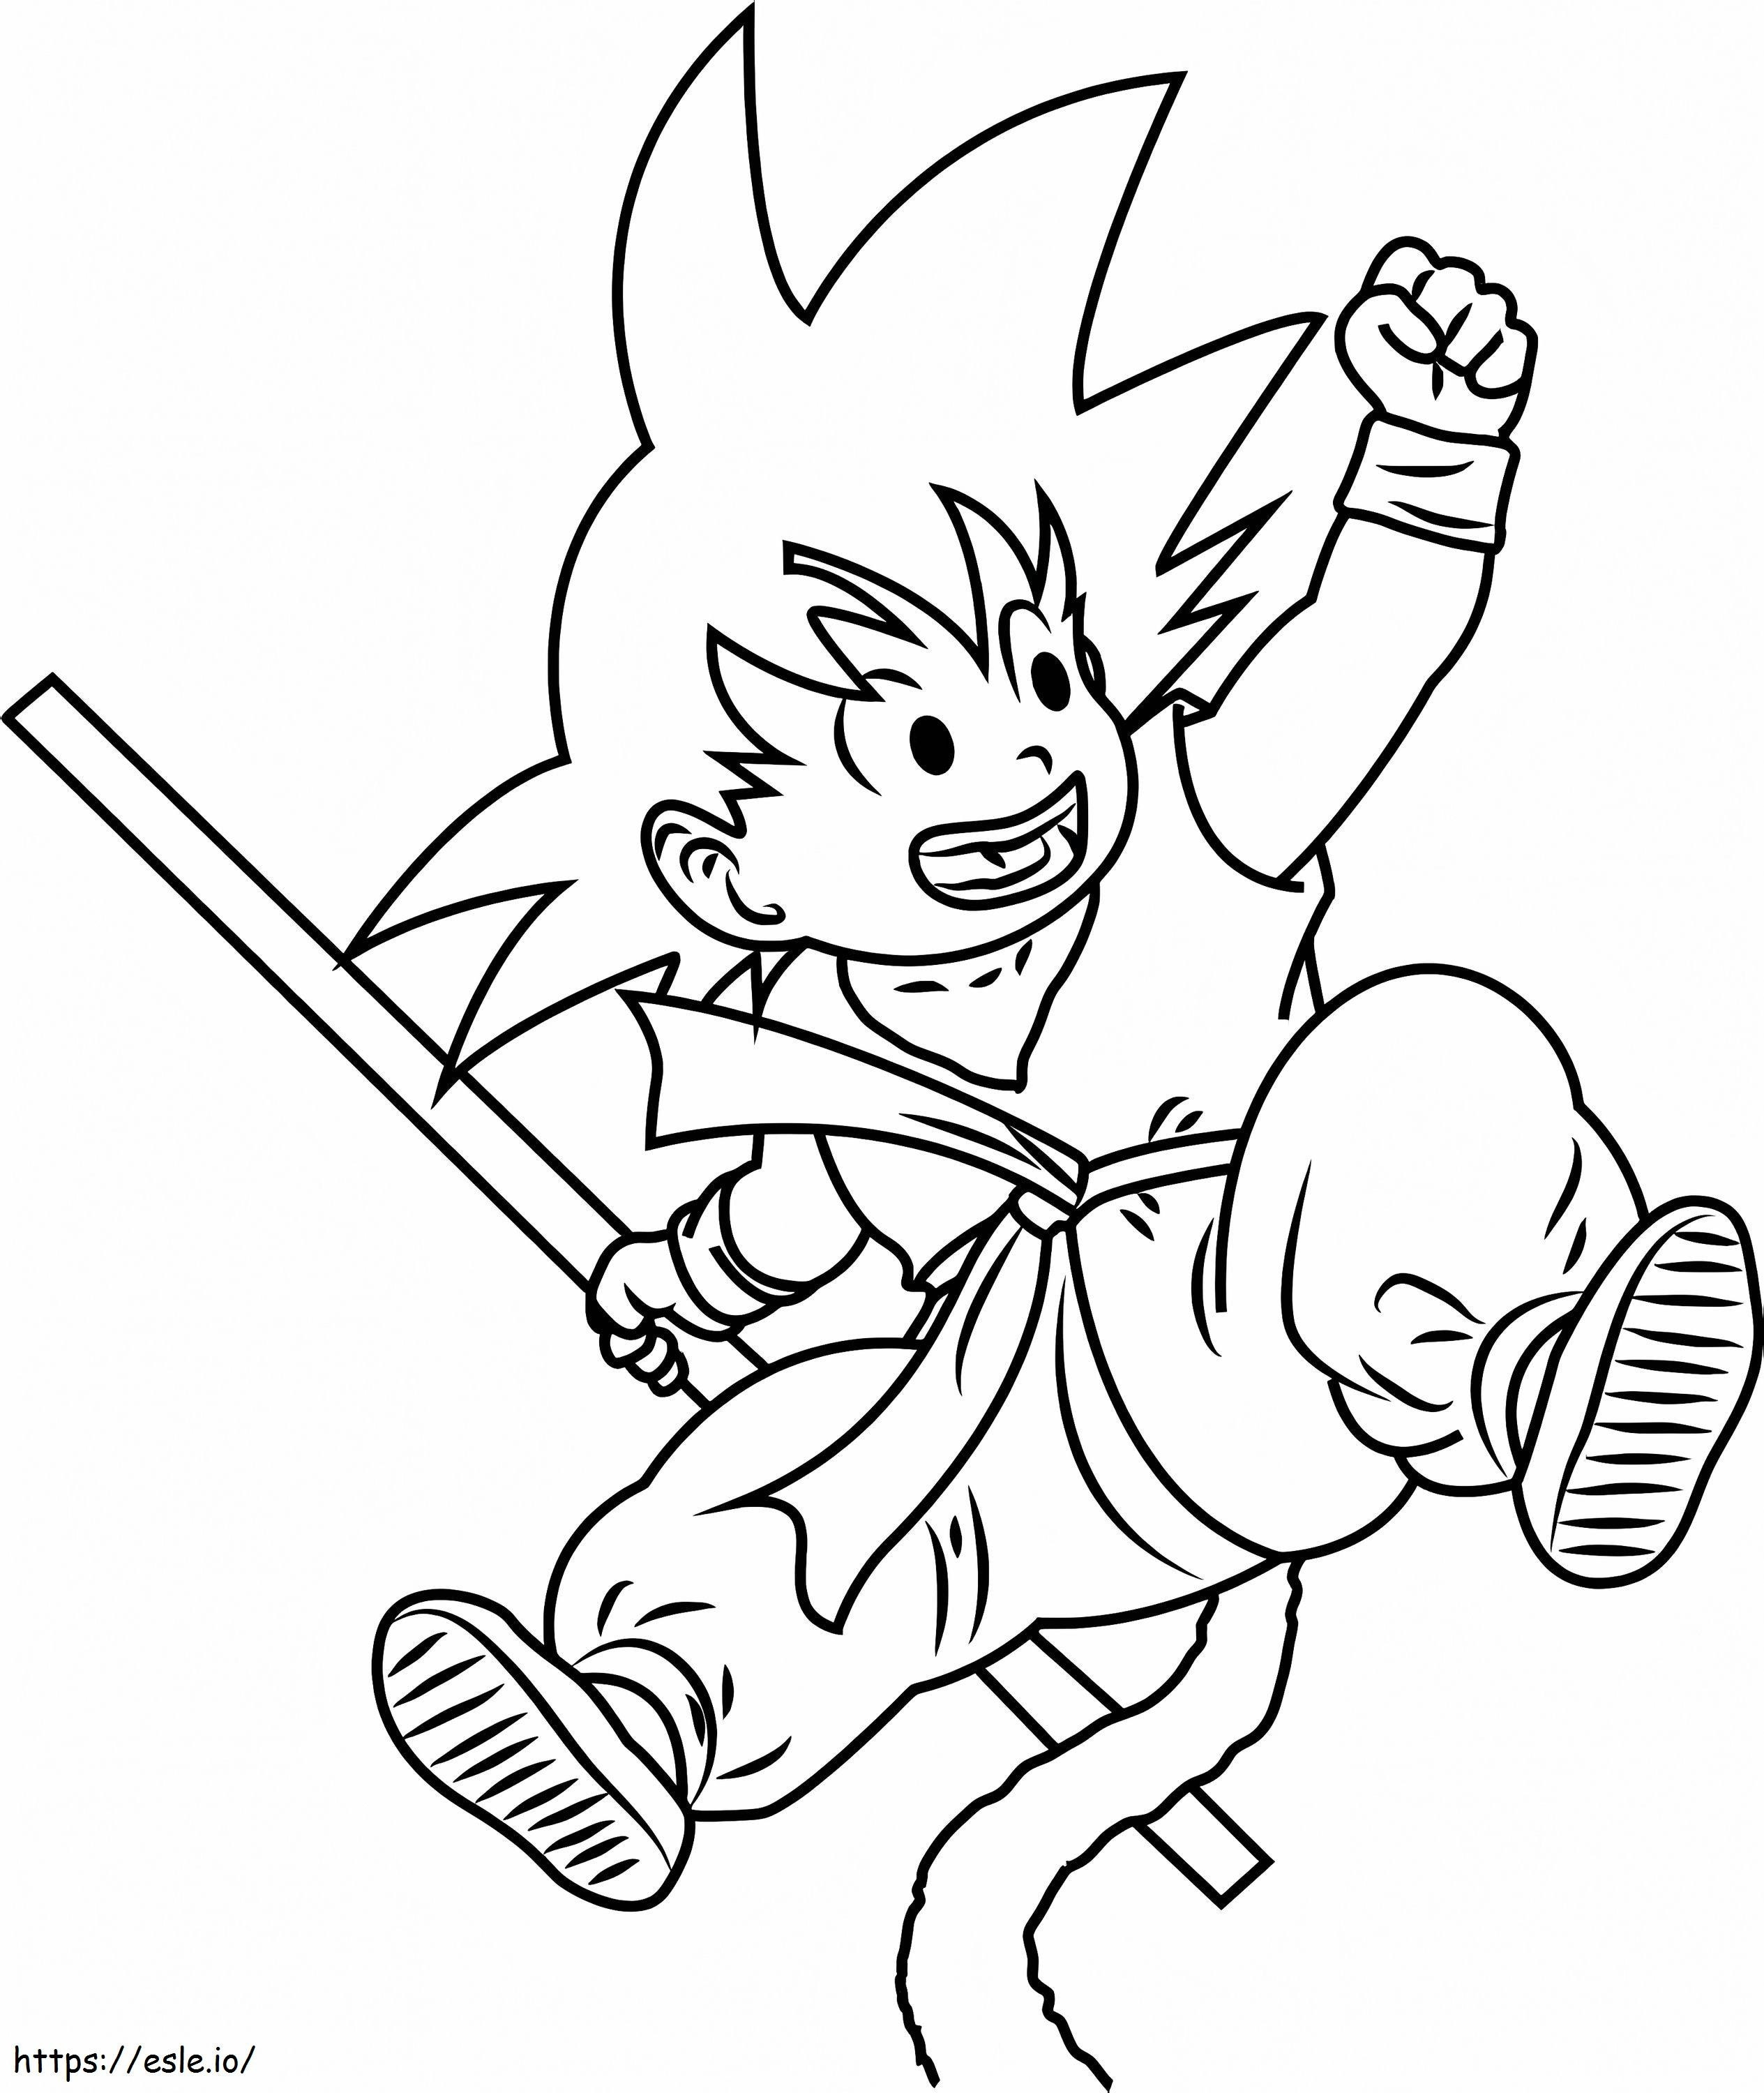 Springender kleiner Goku ausmalbilder